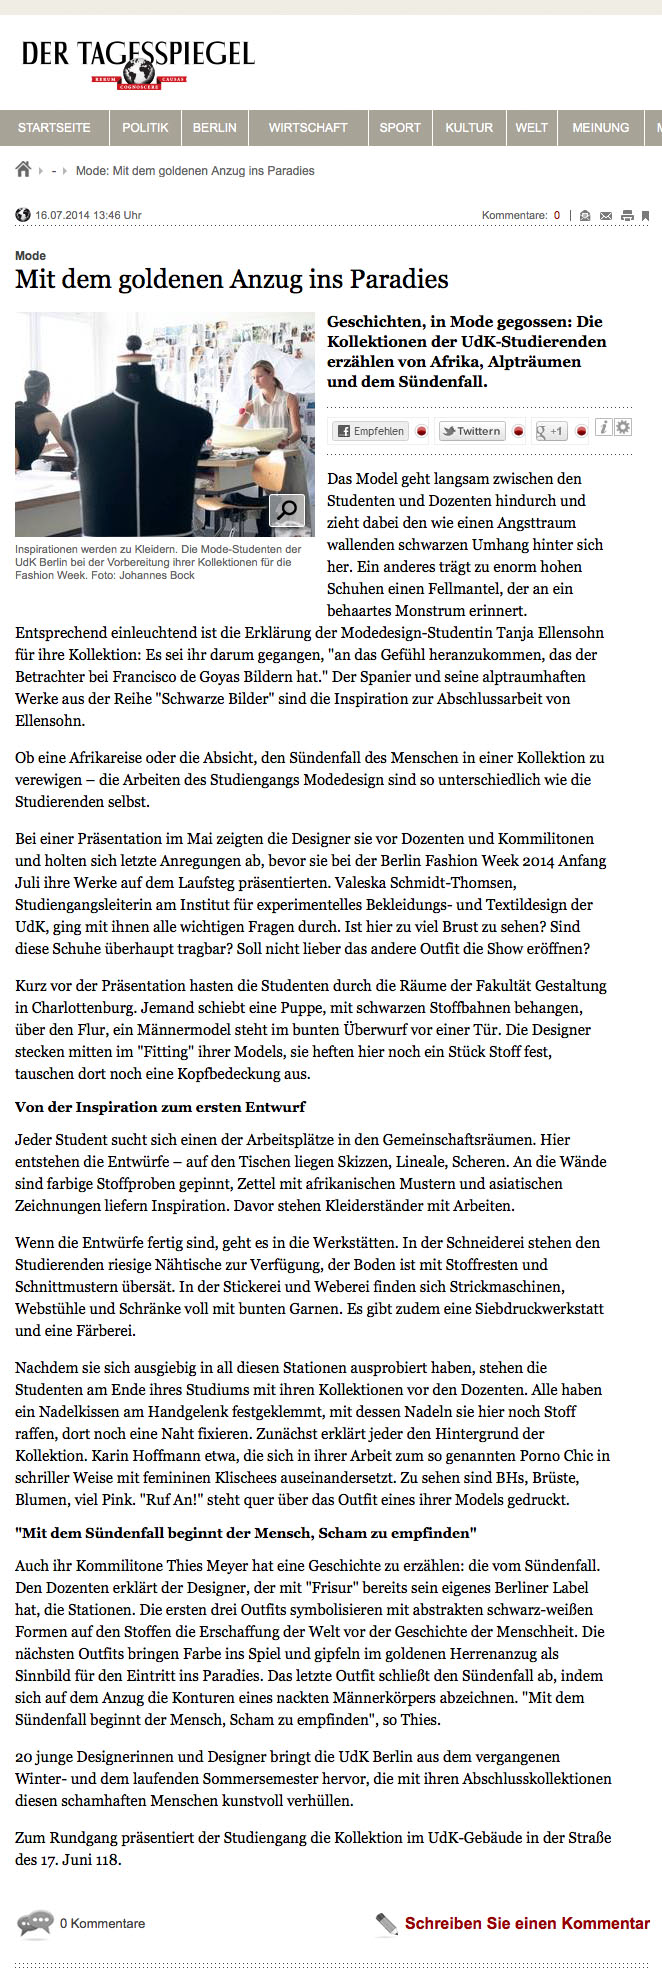 Tagesspiegel.de-themen-udk-mode-mit-dem-goldenen-anzug-ins-paradies